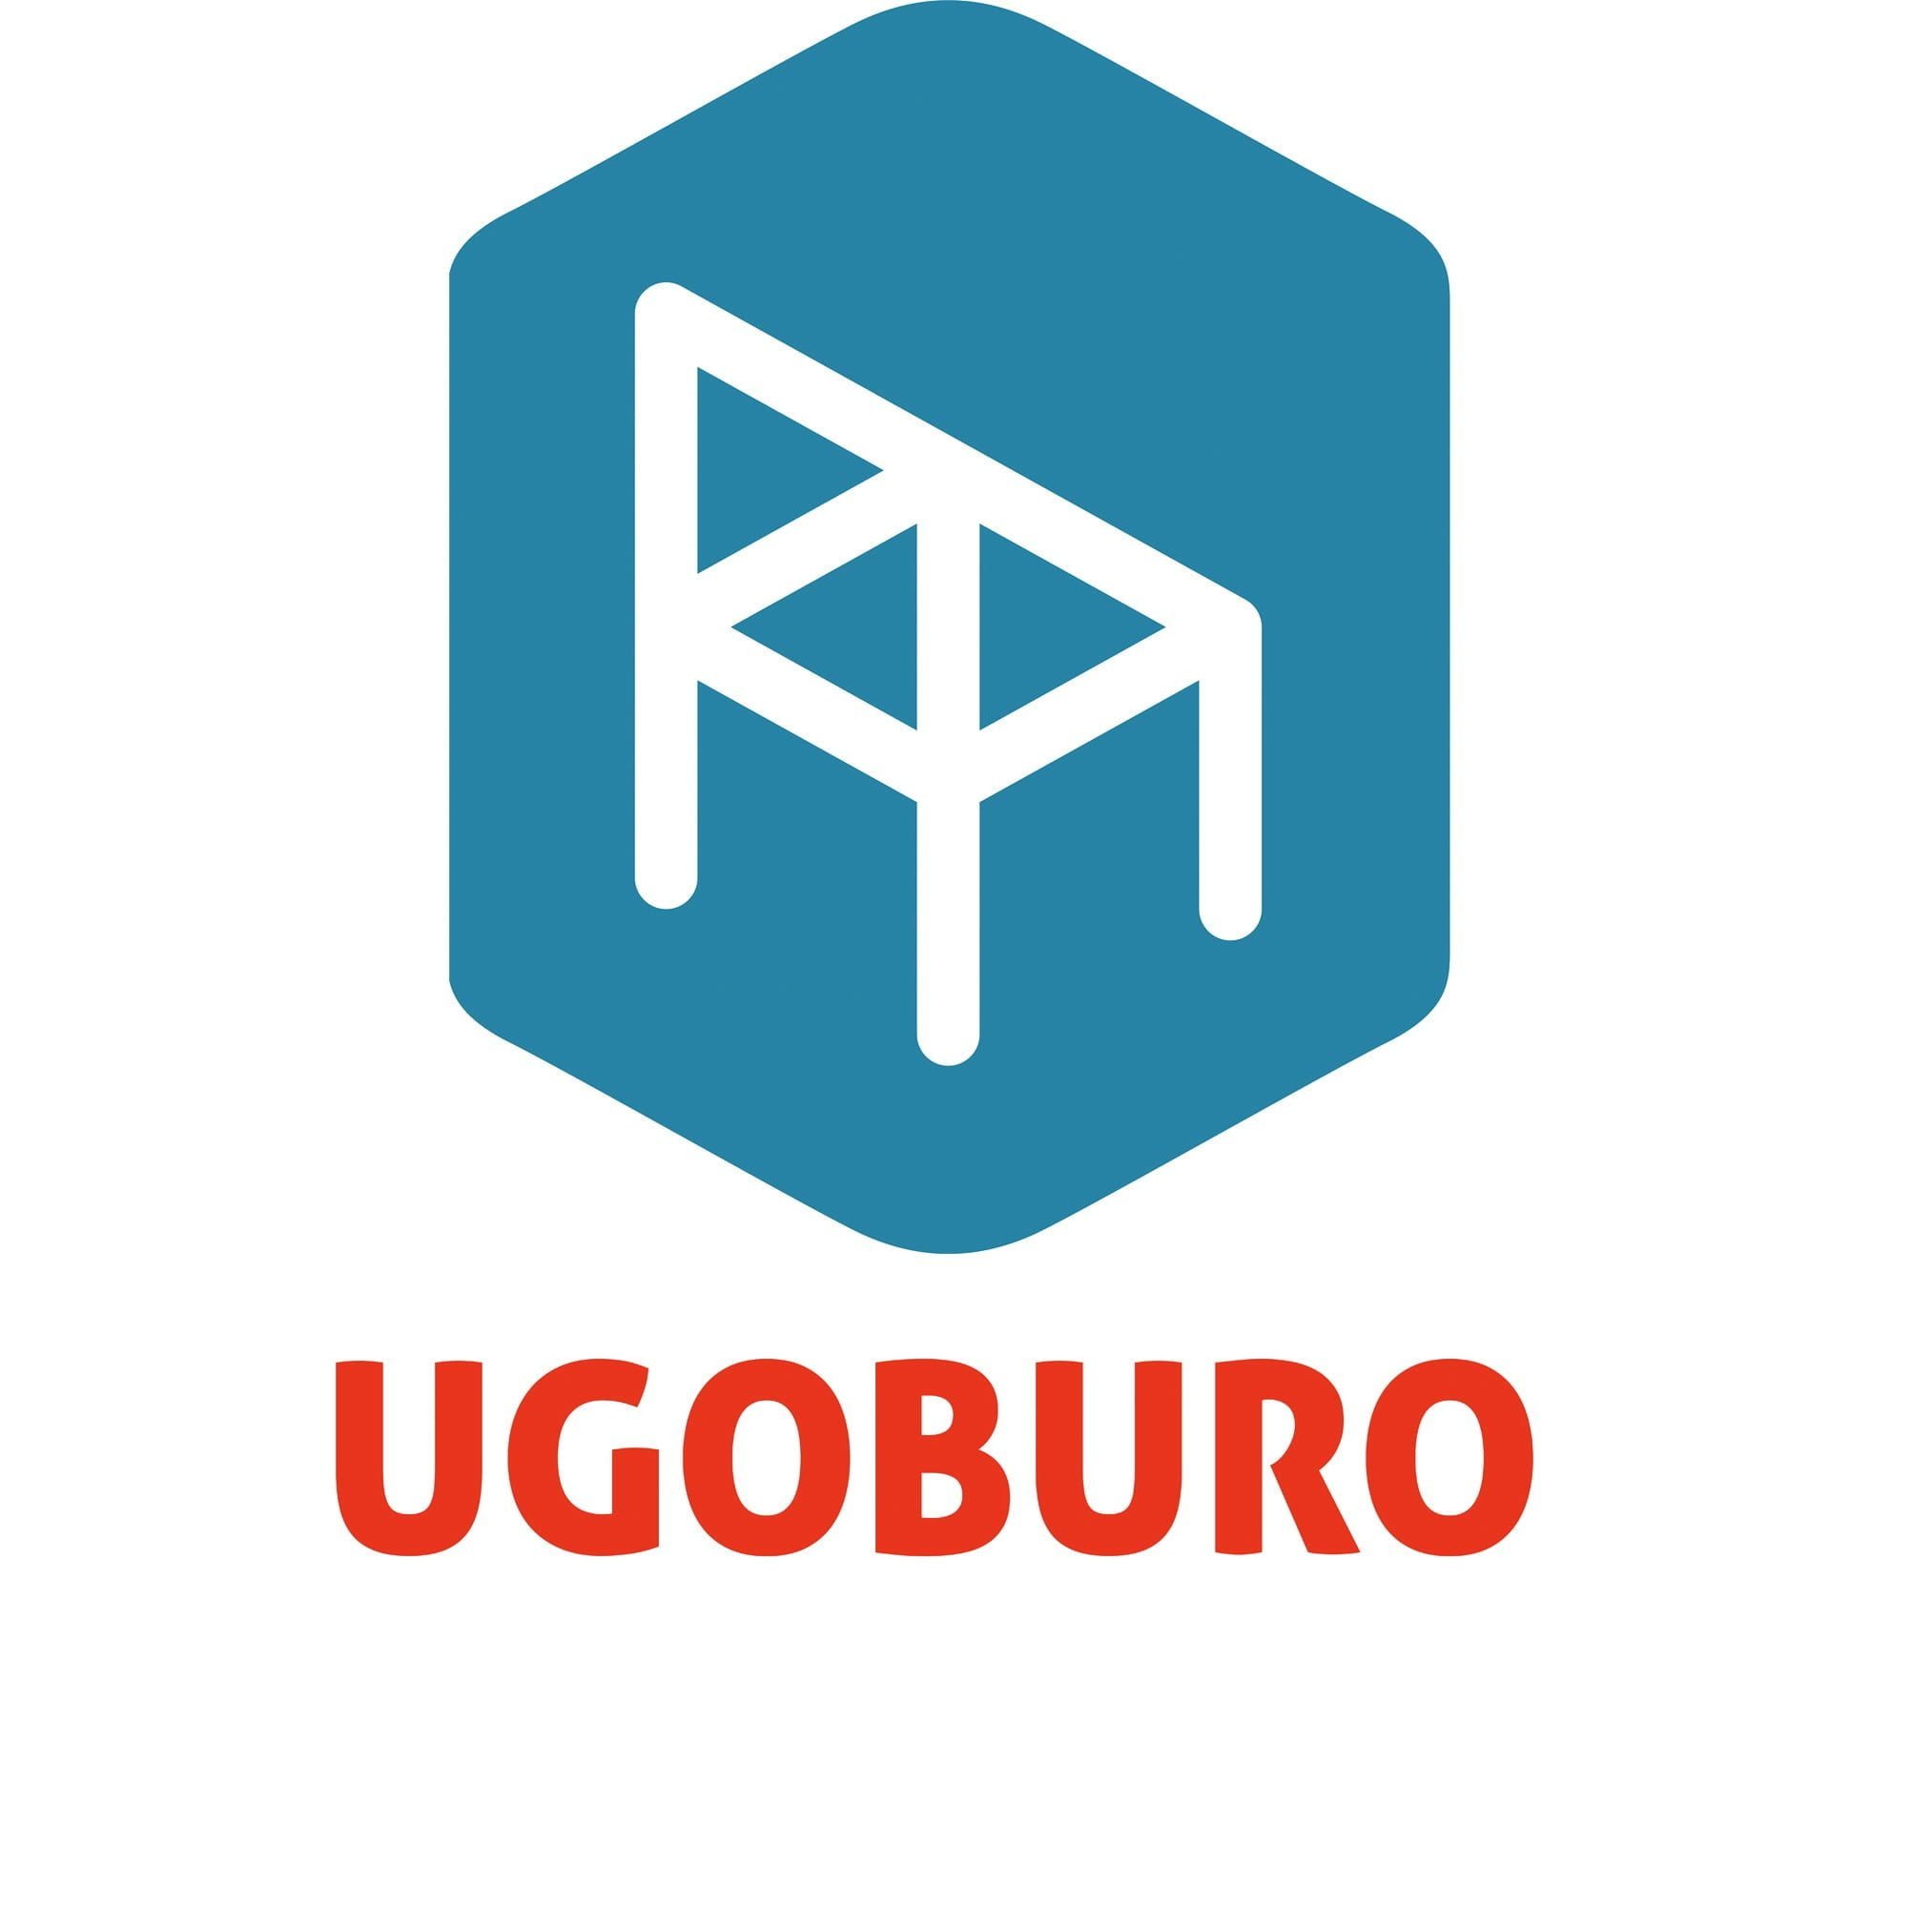 Ugoburo